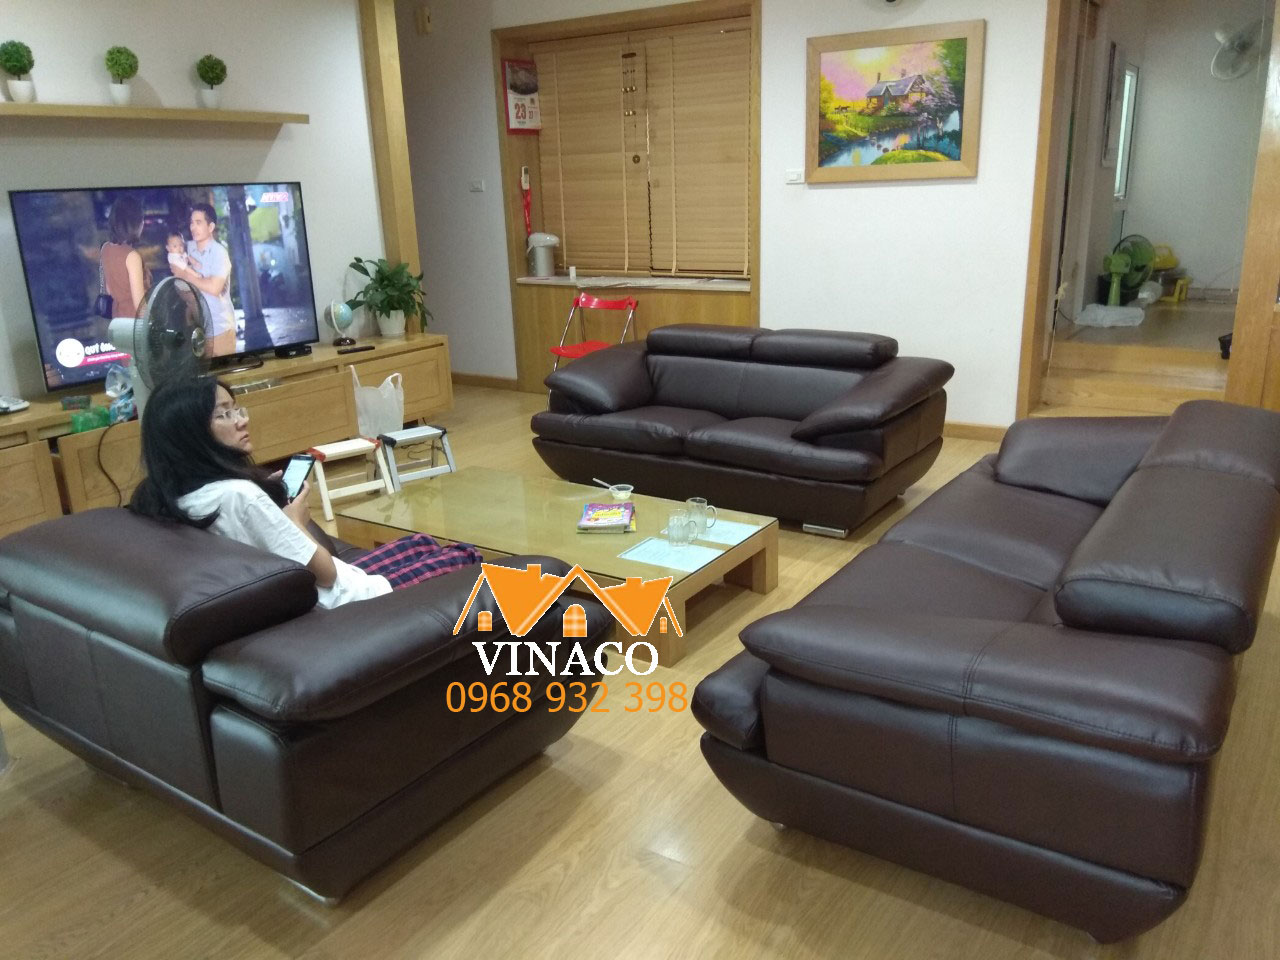 Bọc ghế sofa quận Phú Nhuận dịch vụ bọc ghế tại nhà giá rẻ chất lượng đảm bảo tại TPHCM